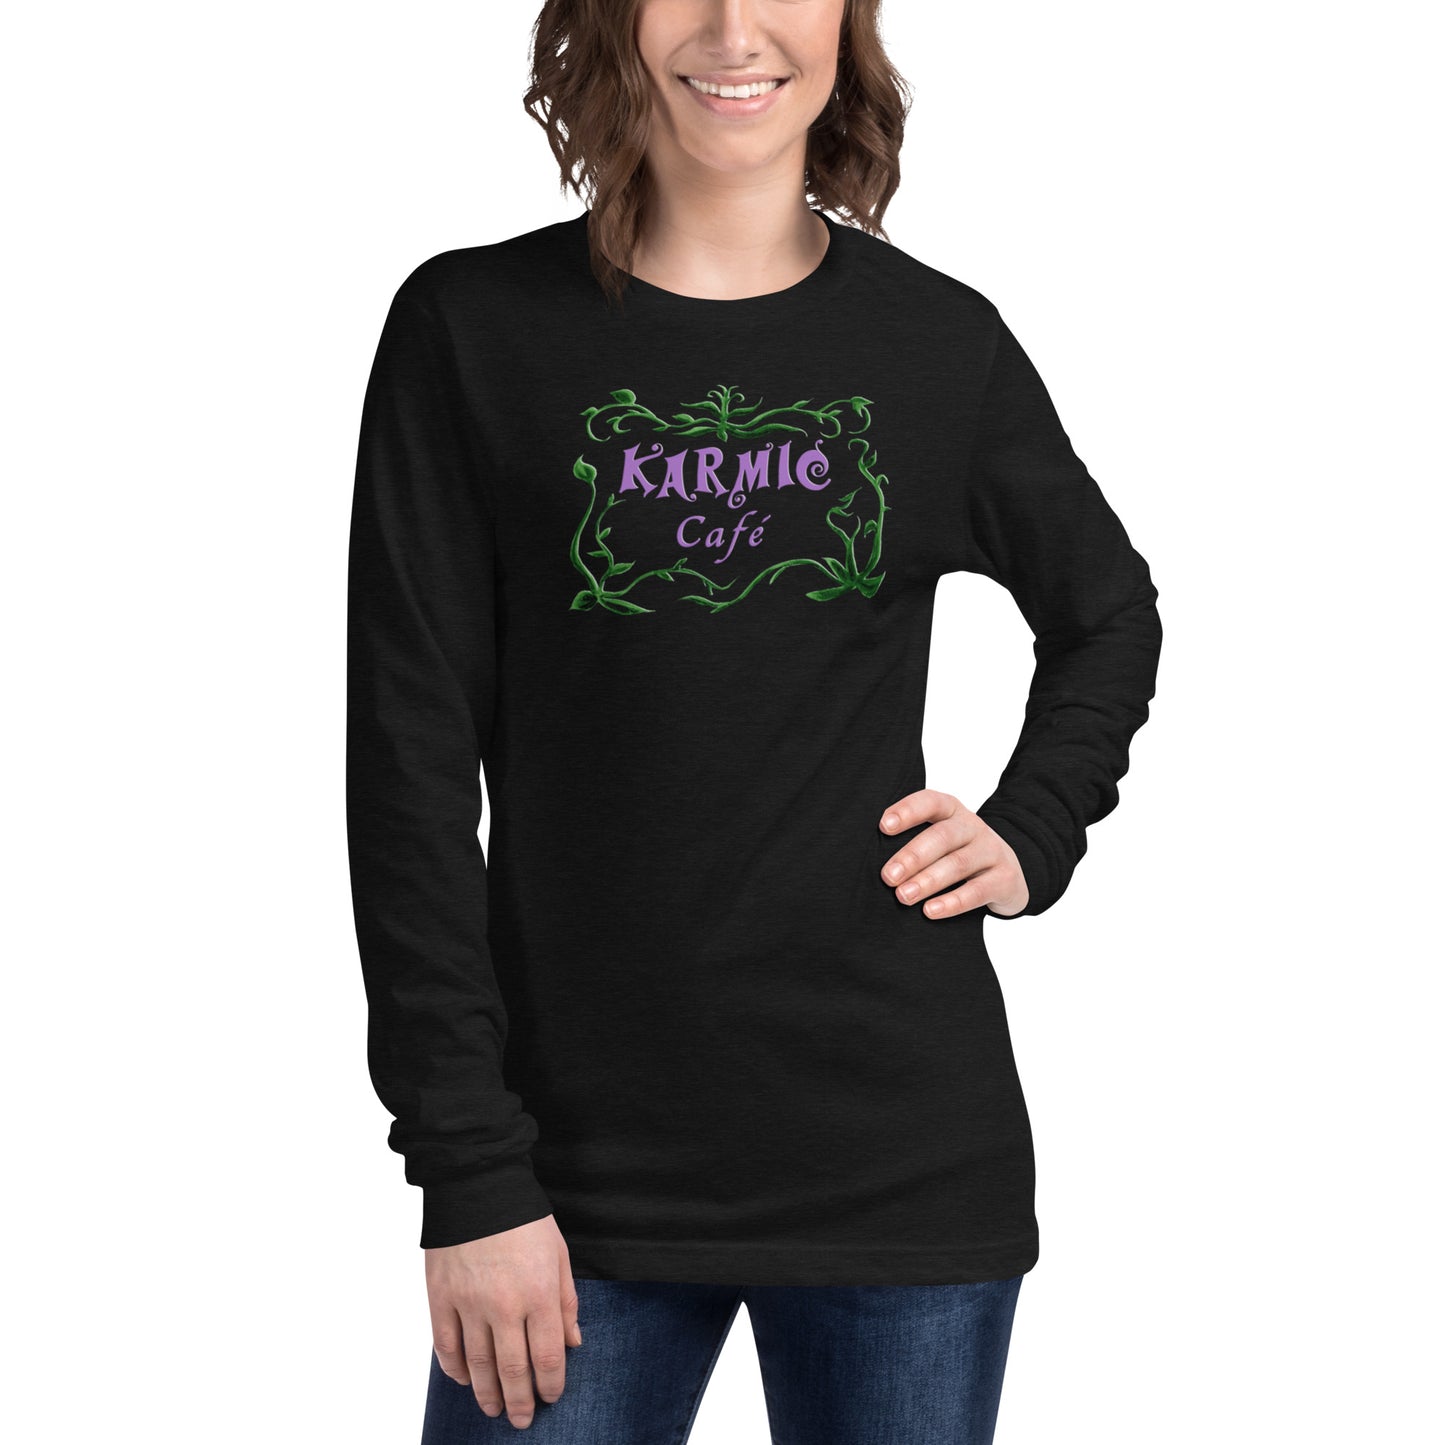 Super Comfy Karmic Cafe T-shirt (black long-sleeved)